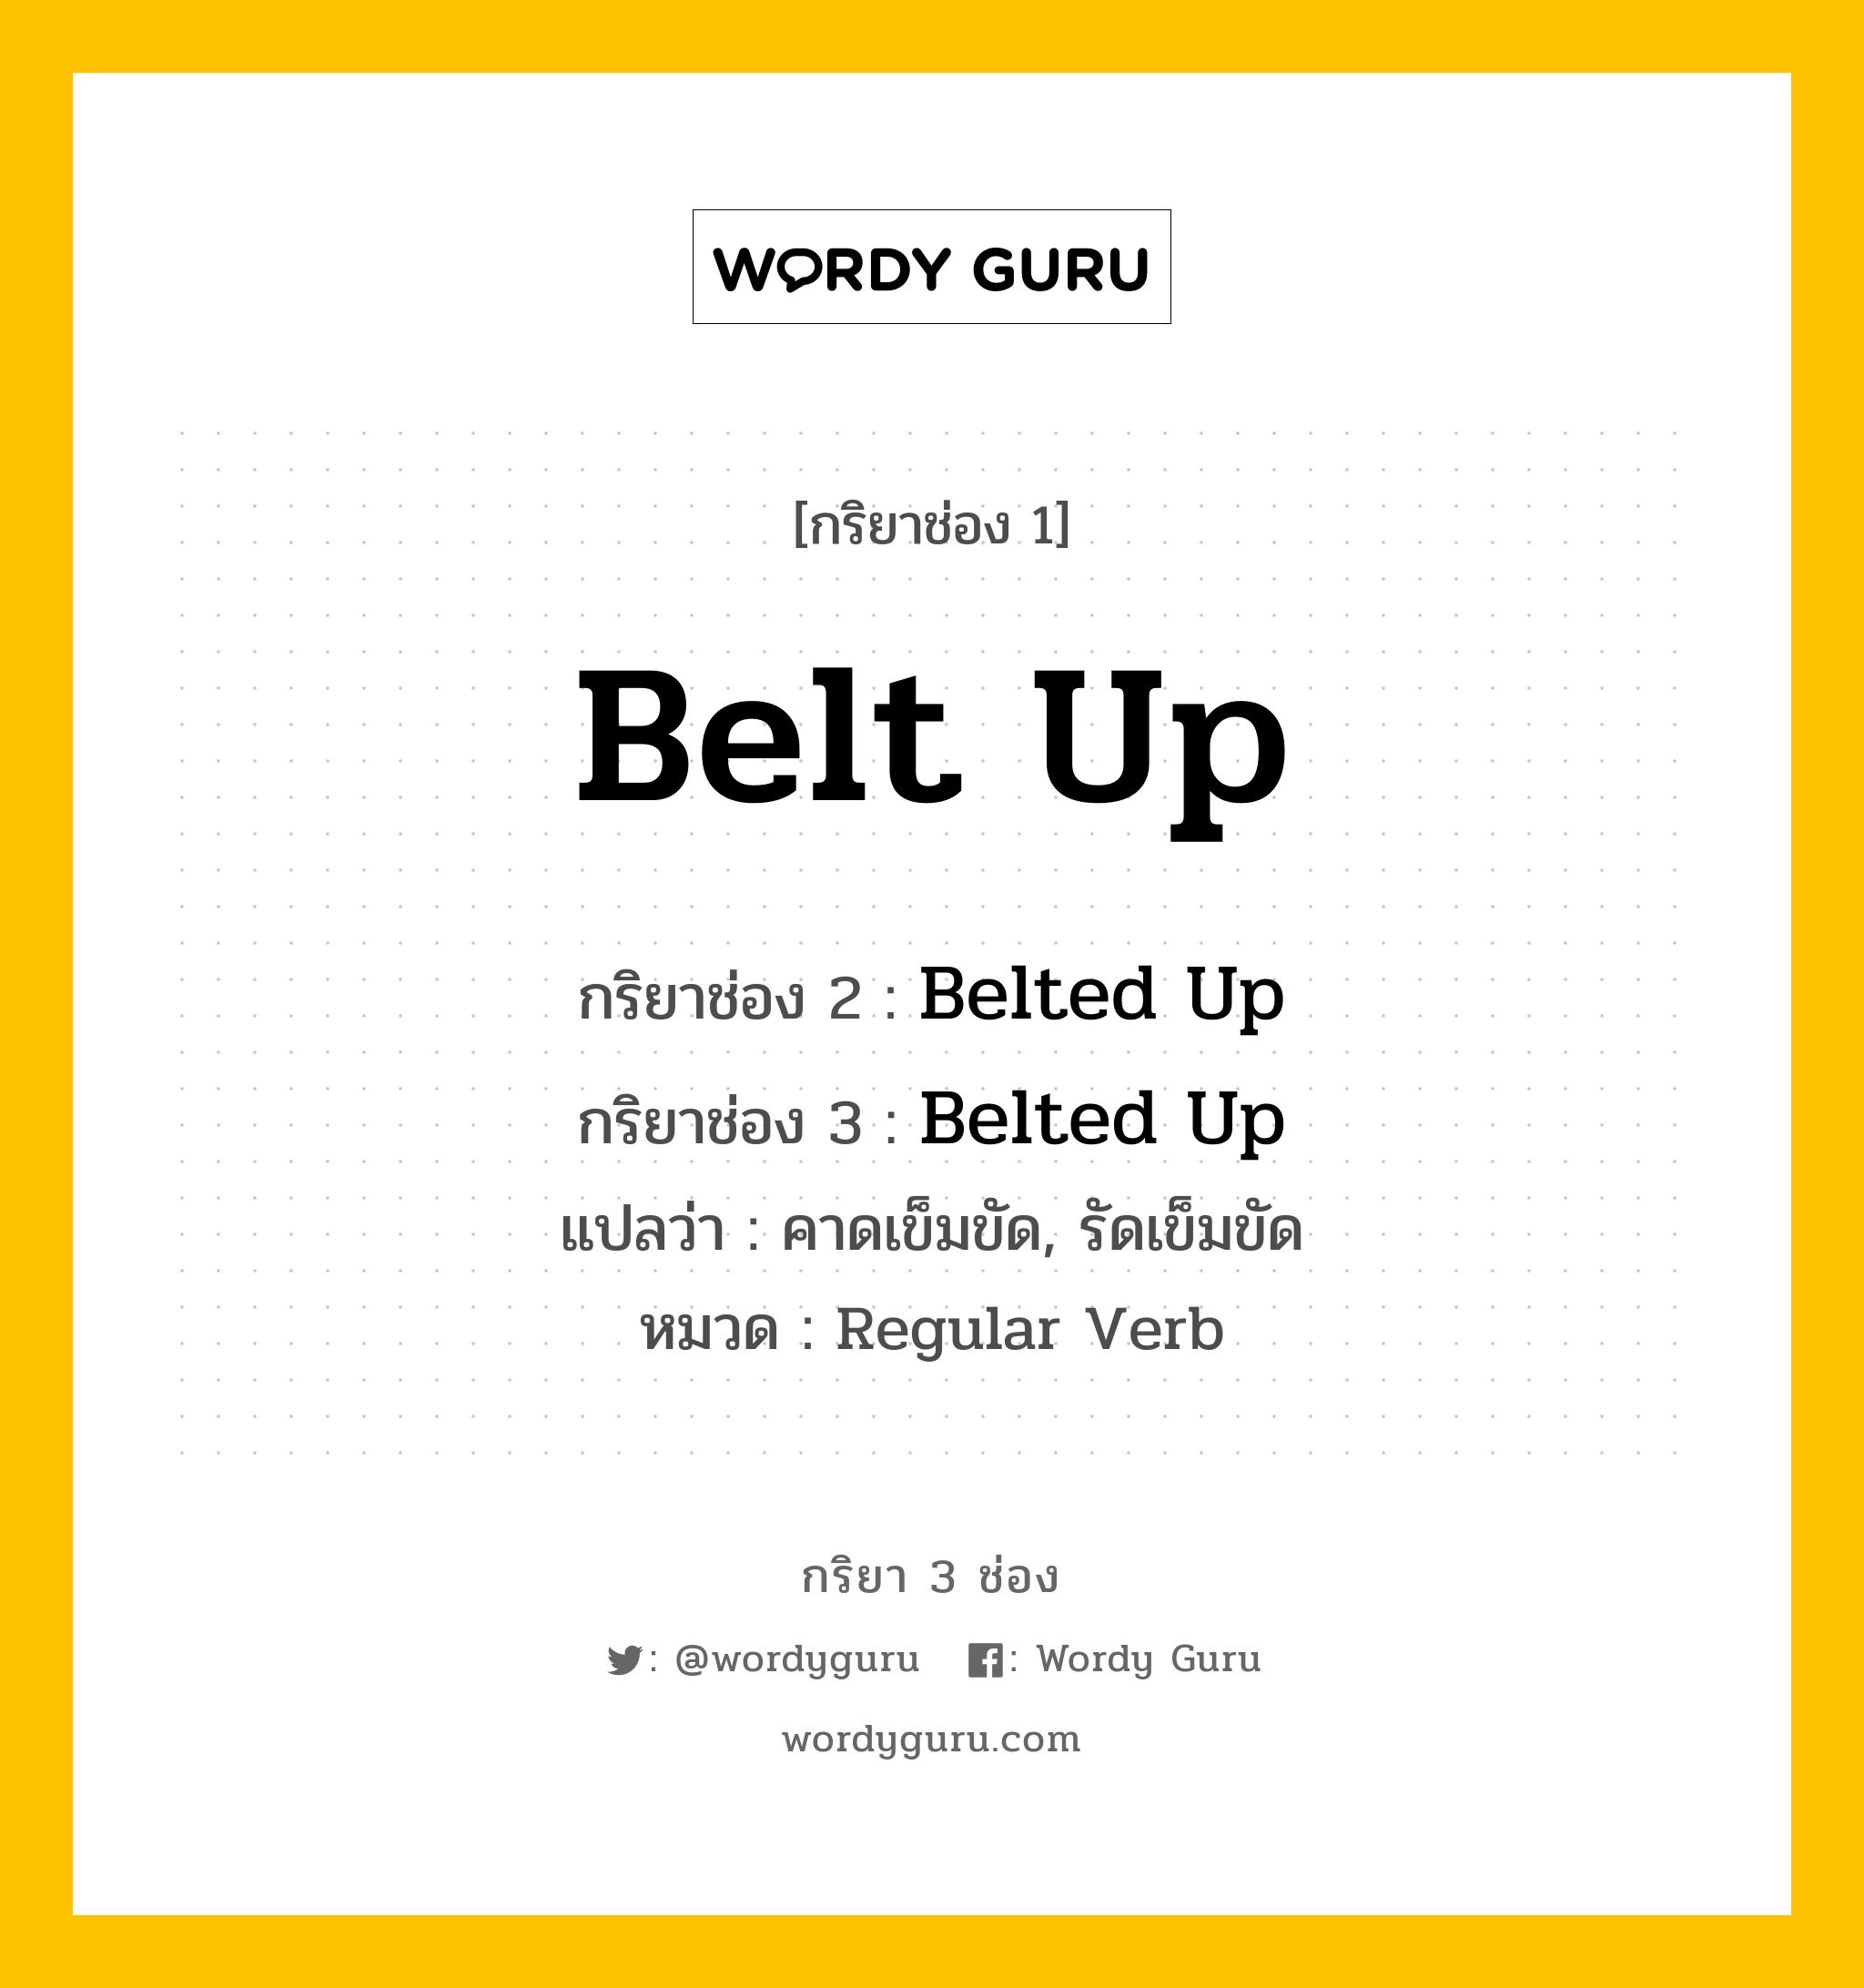 กริยา 3 ช่อง: Belt Up ช่อง 2 Belt Up ช่อง 3 คืออะไร, กริยาช่อง 1 Belt Up กริยาช่อง 2 Belted Up กริยาช่อง 3 Belted Up แปลว่า คาดเข็มขัด, รัดเข็มขัด หมวด Regular Verb หมวด Regular Verb